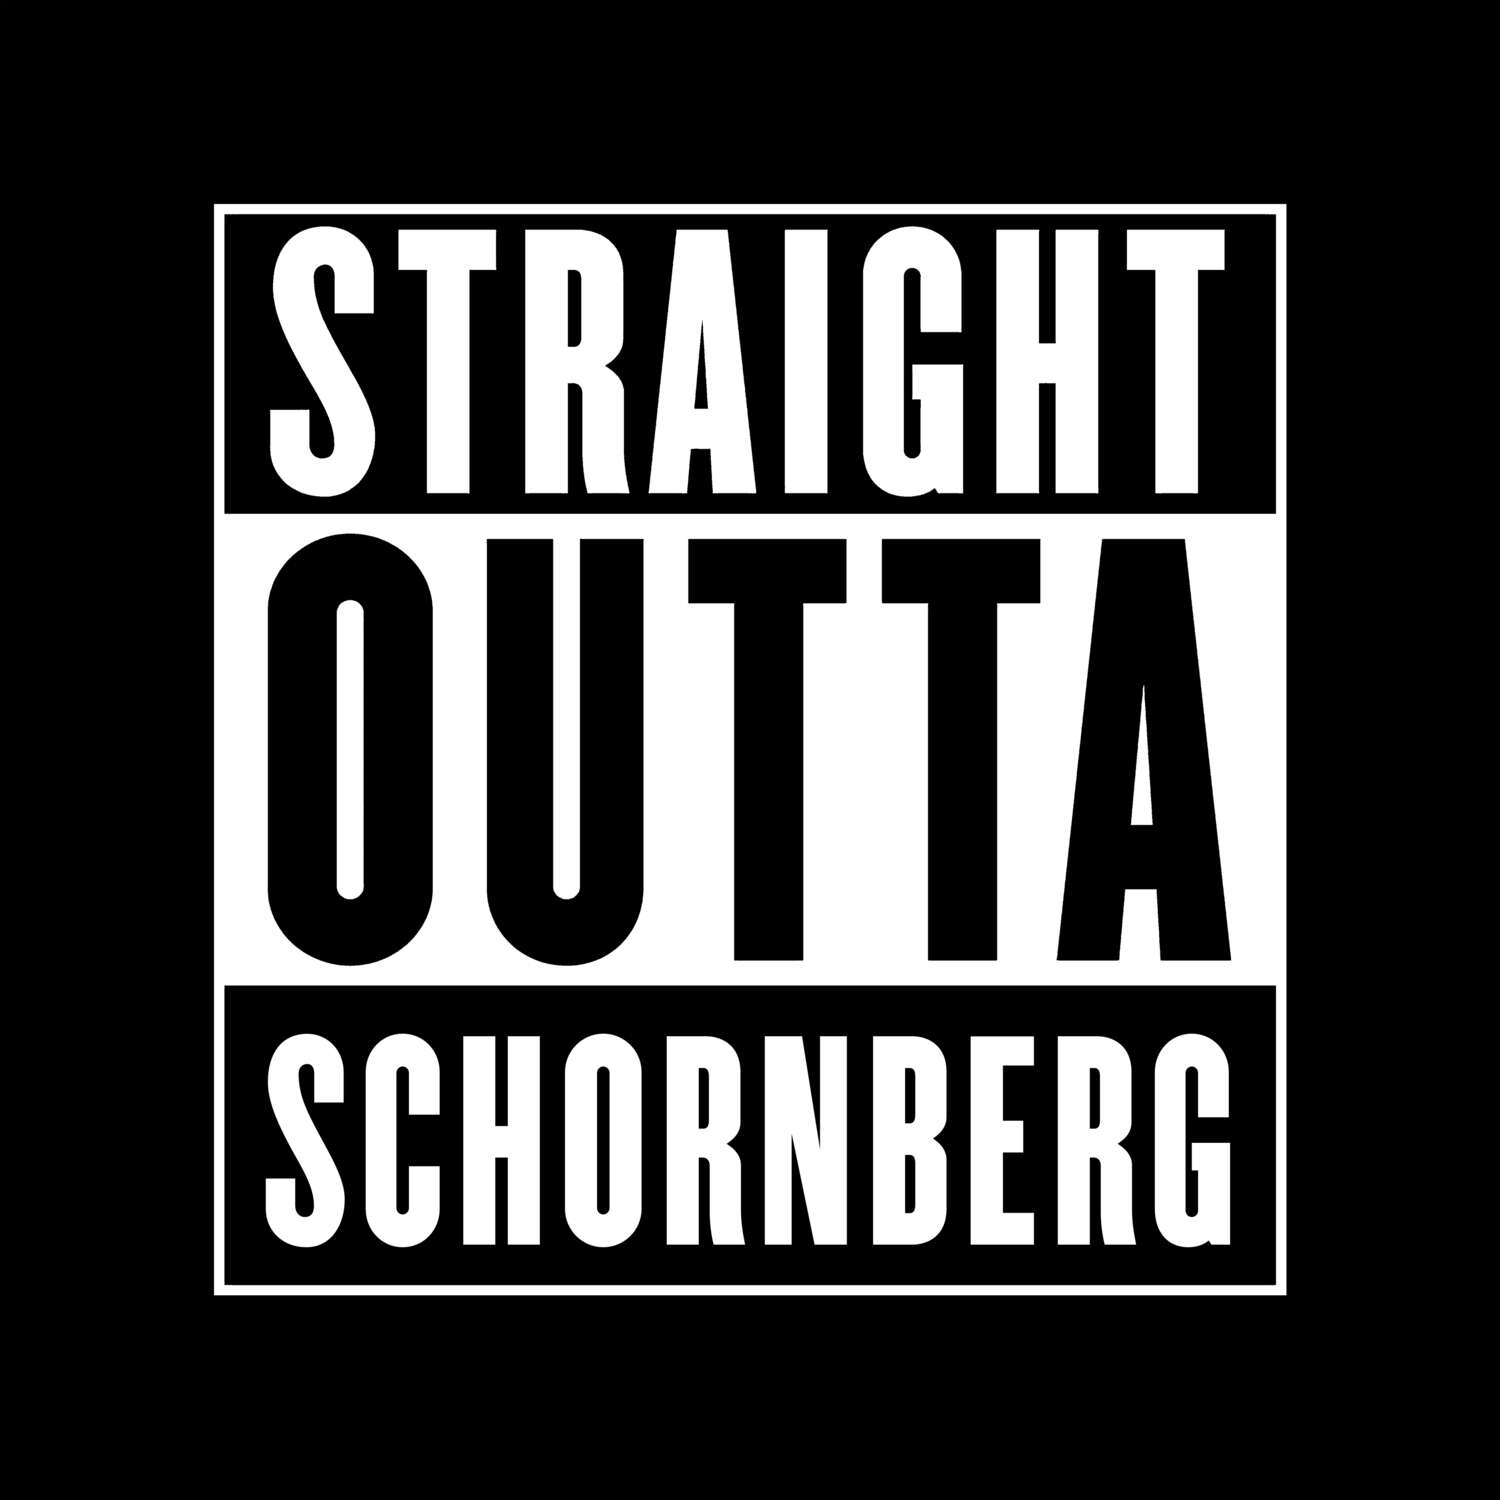 Schornberg T-Shirt »Straight Outta«